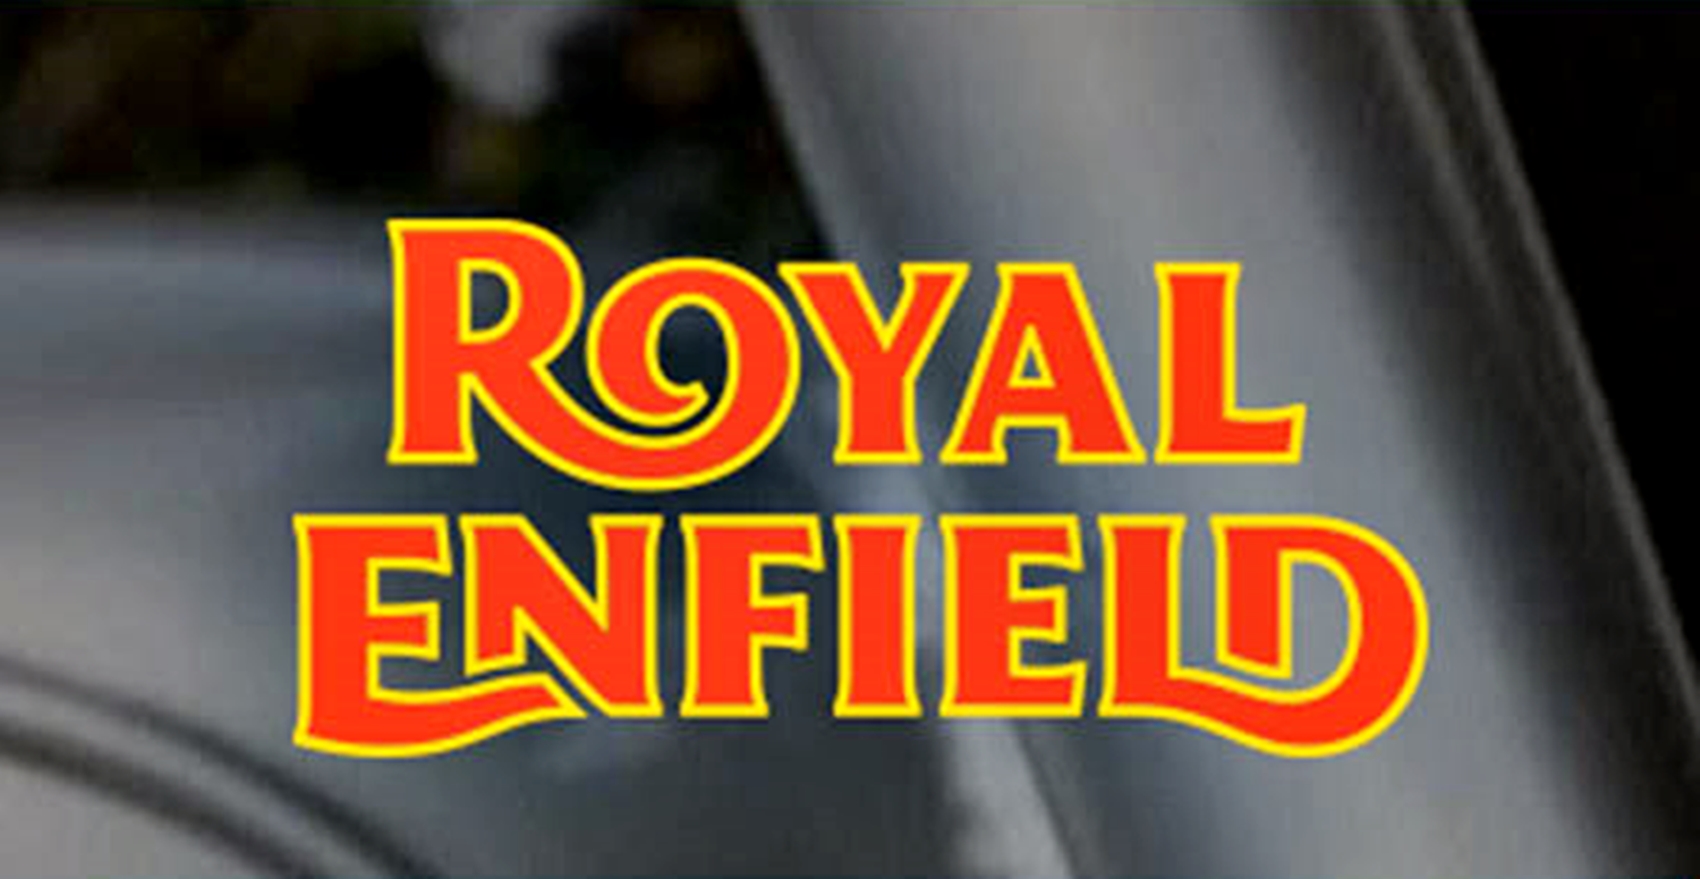 Logo Royal Enfield.